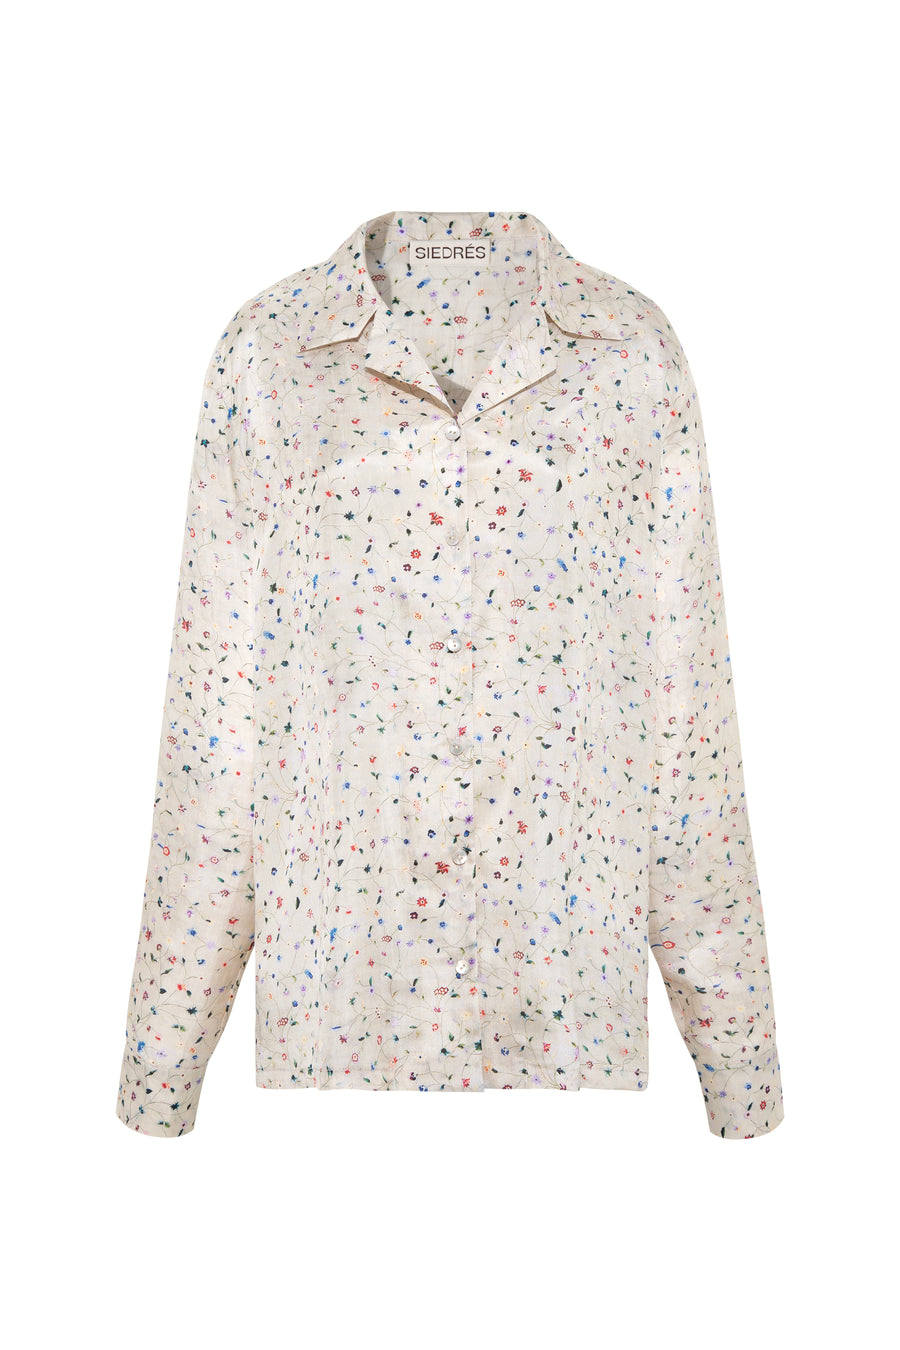 ERAS - Floral printed button-down shirt